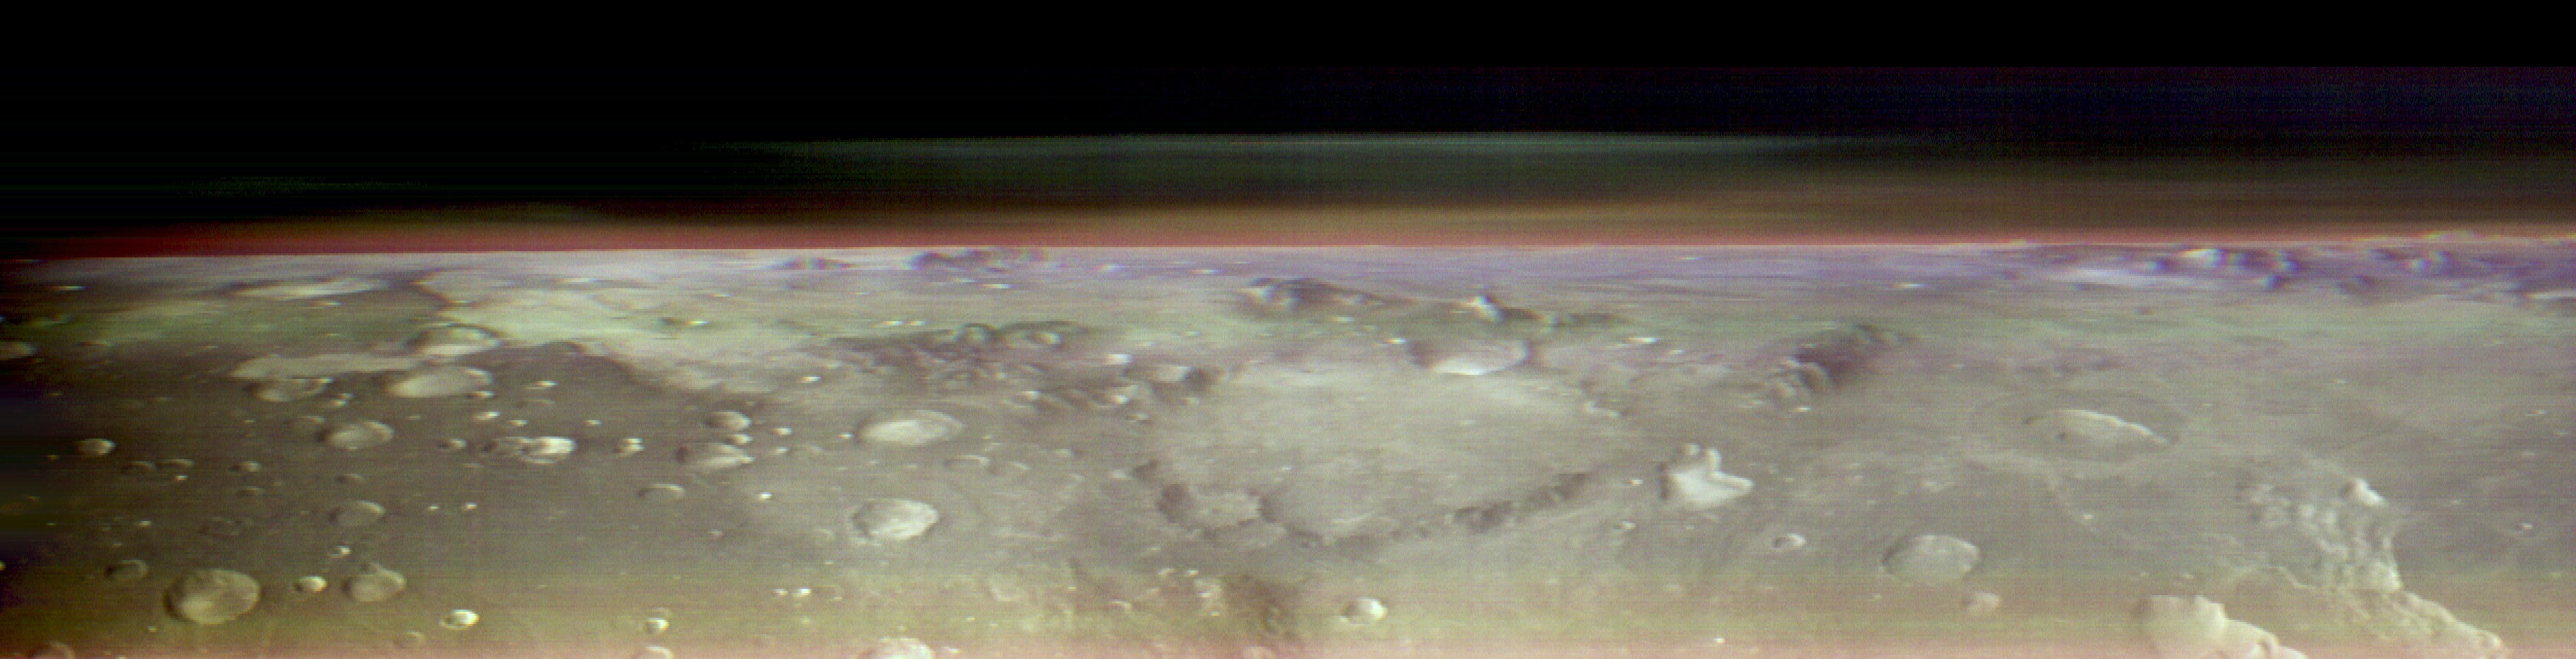 Esta inusual vista del horizonte de Marte fue capturada por el orbitador Odyssey de la NASA utilizando su cámara THEMIS, en una operación que los ingenieros tardaron tres meses en planificar. Está tomada desde unas 250 millas sobre la superficie marciana, aproximadamente la misma altitud a la que la Estación Espacial Internacional orbita la Tierra.